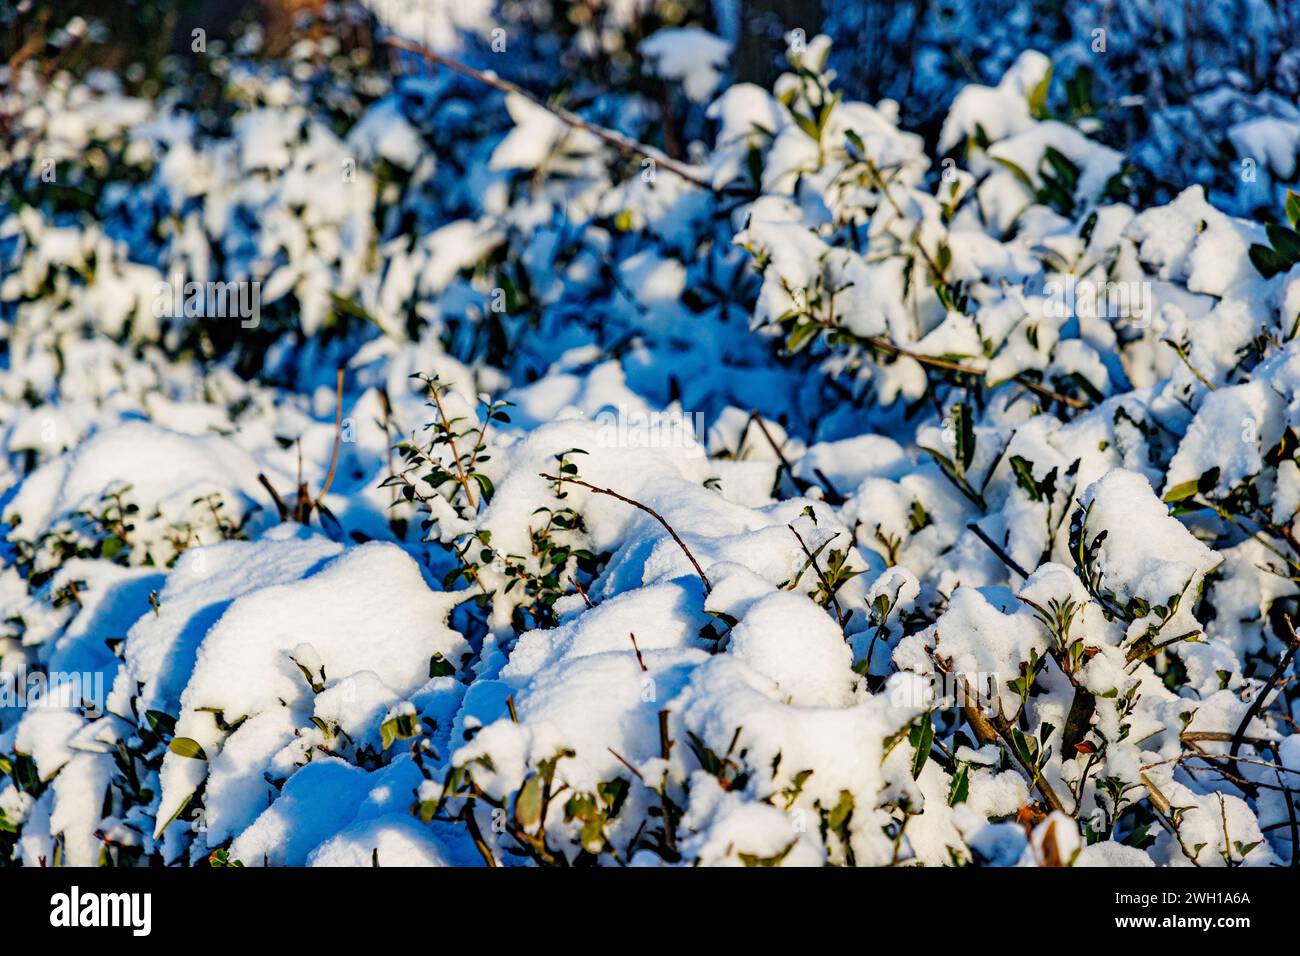 Primo piano di abbondanti nevicate su foglie verdi di cespuglio illuminate dalla luce del sole su sfondo sfocato, soleggiato giorno d'inverno dopo una forte nevicata Foto Stock